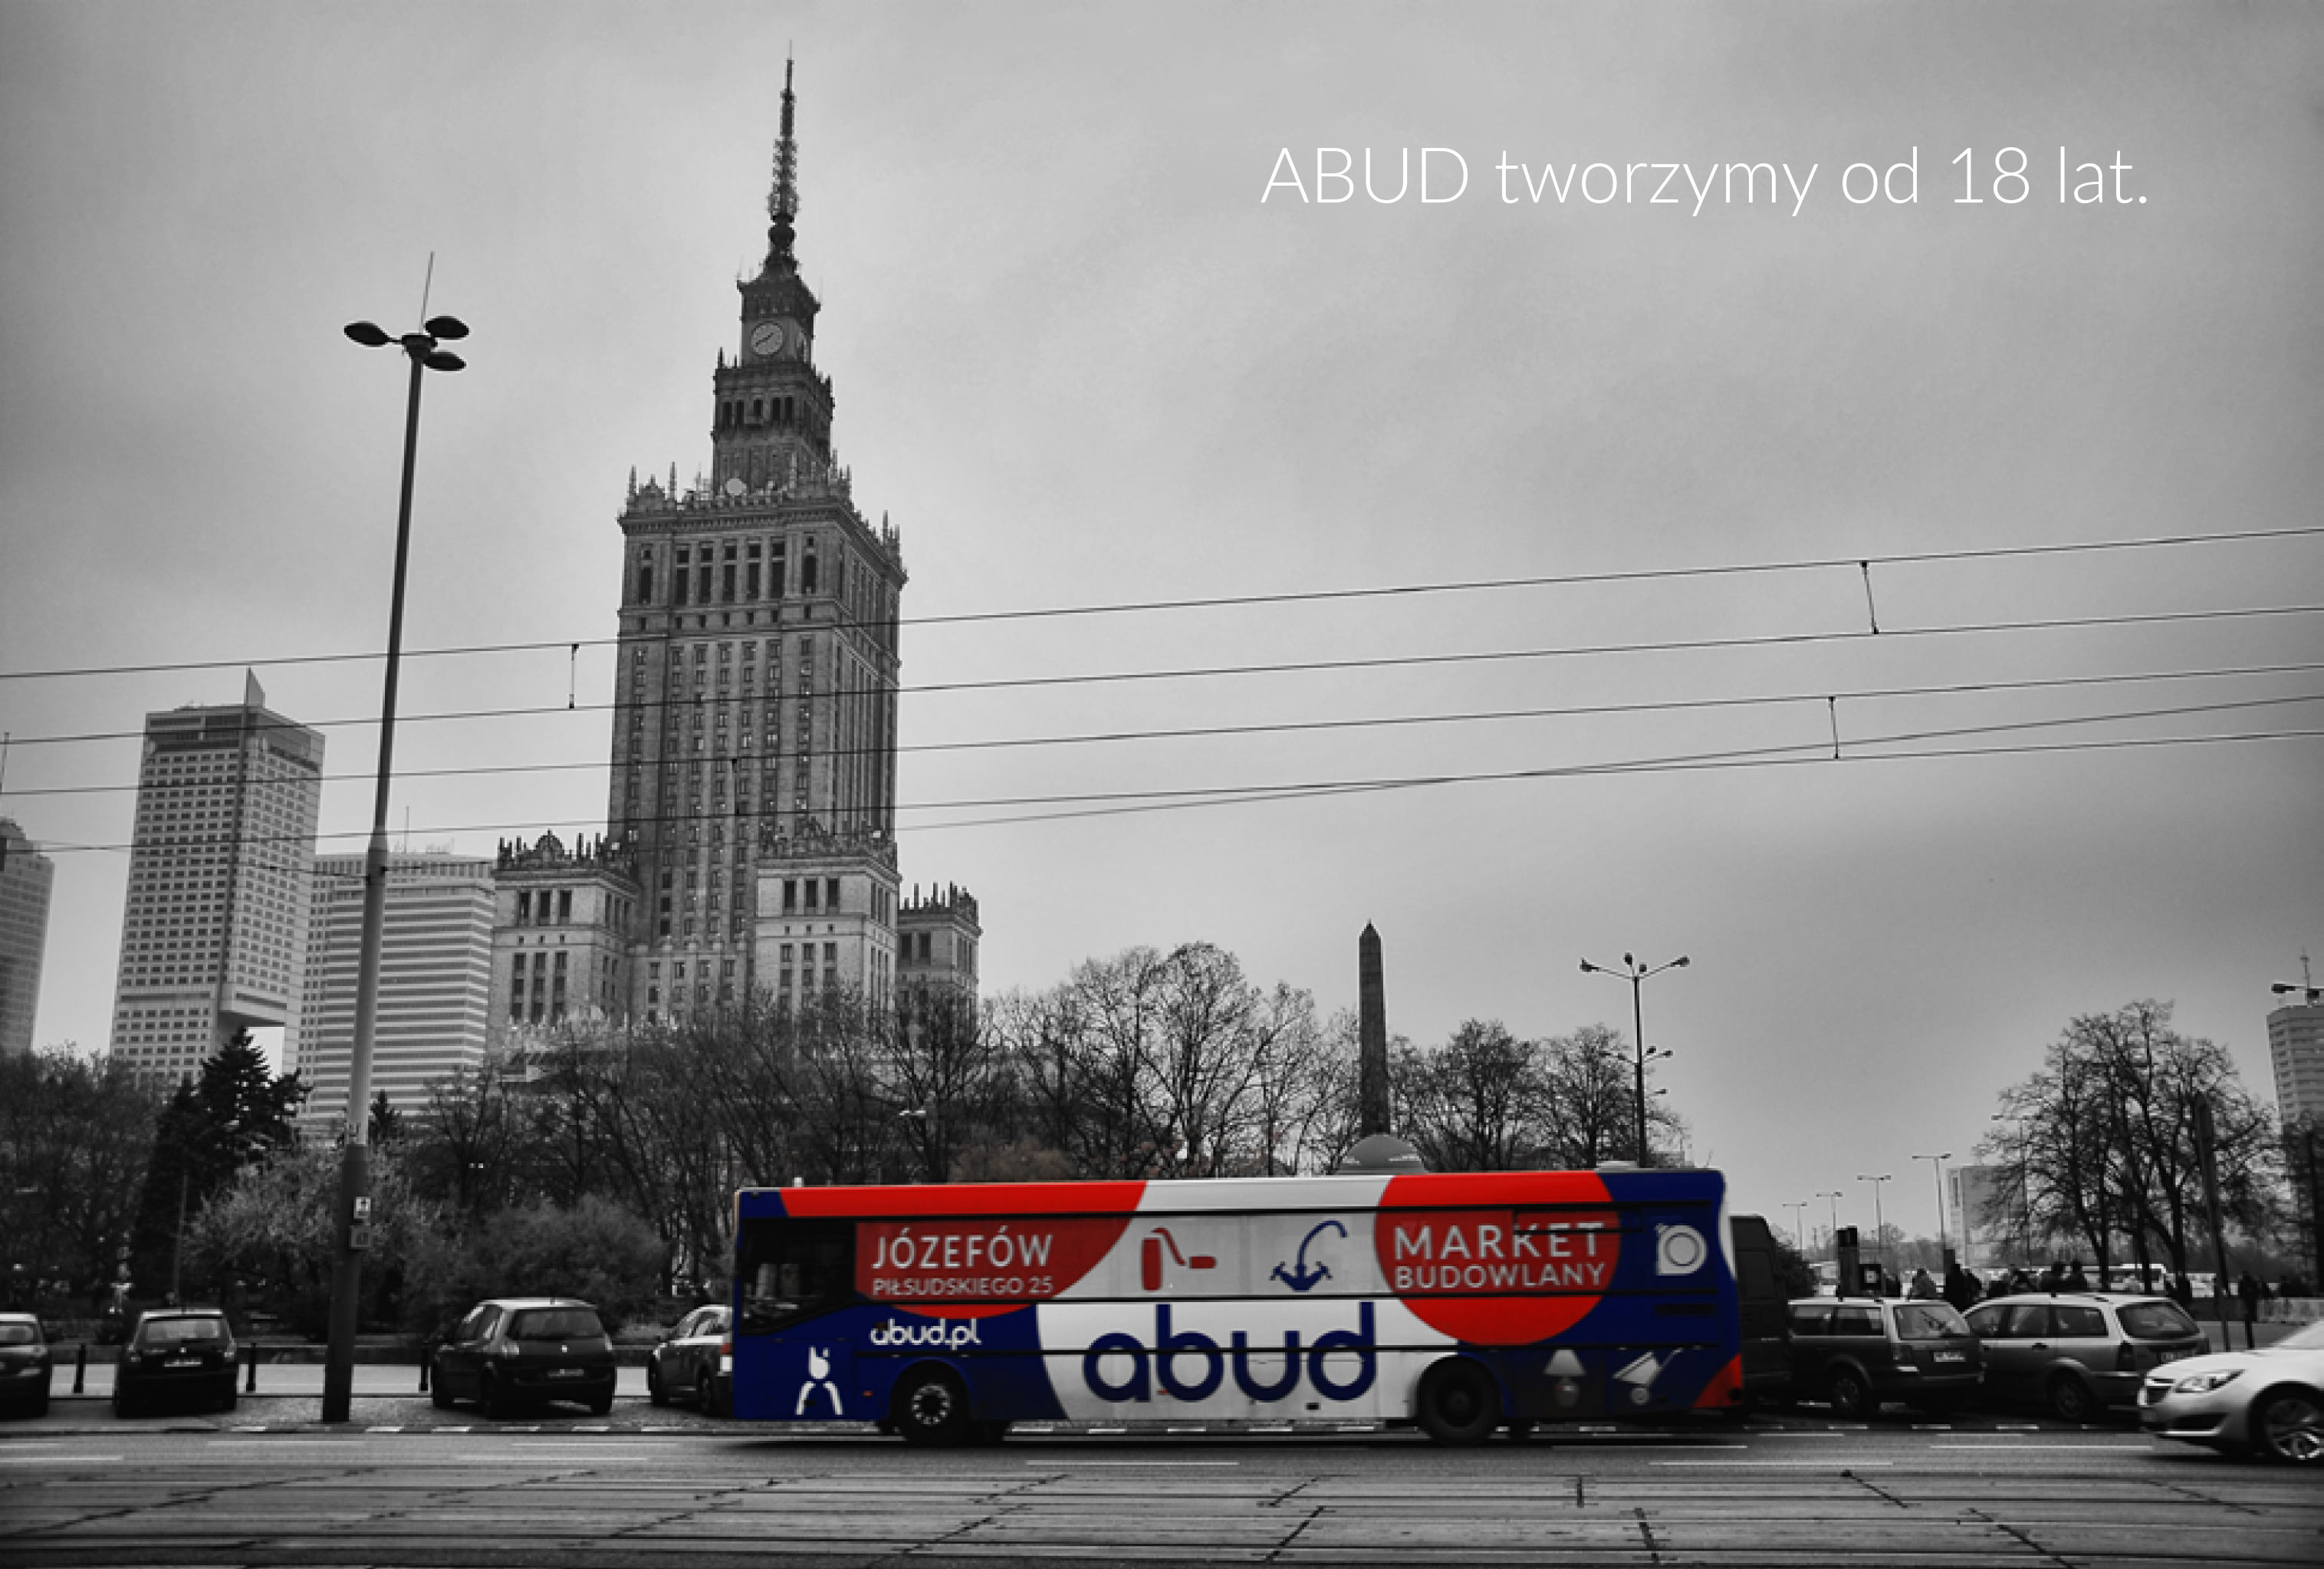 Warszawa | Abud tworzymy od 18 lat